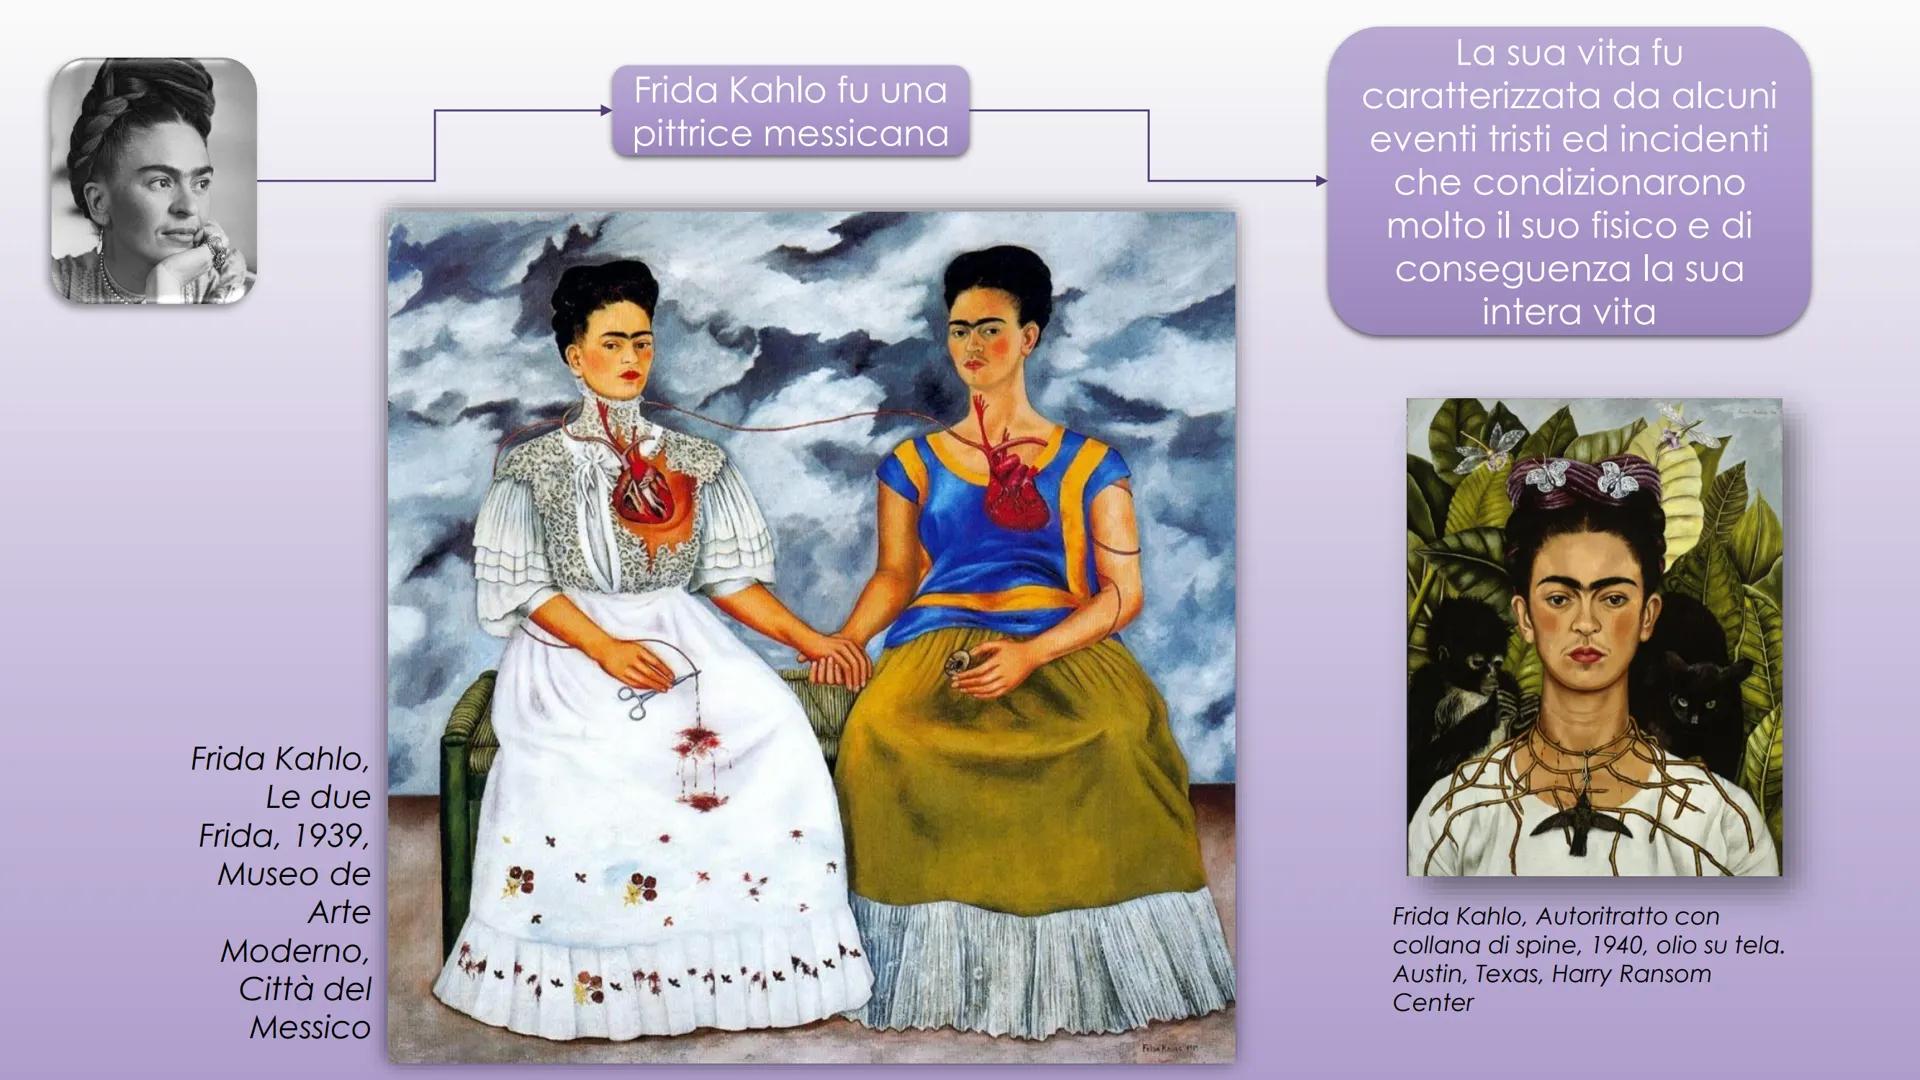 LA FORZA
DELLE DONNE
wwill
WILL
WIL Musica
Aretha Franklin
Arte
Frida Kahlo
Motoria
La lunga strada per
superare le
differenze di genere
Ita